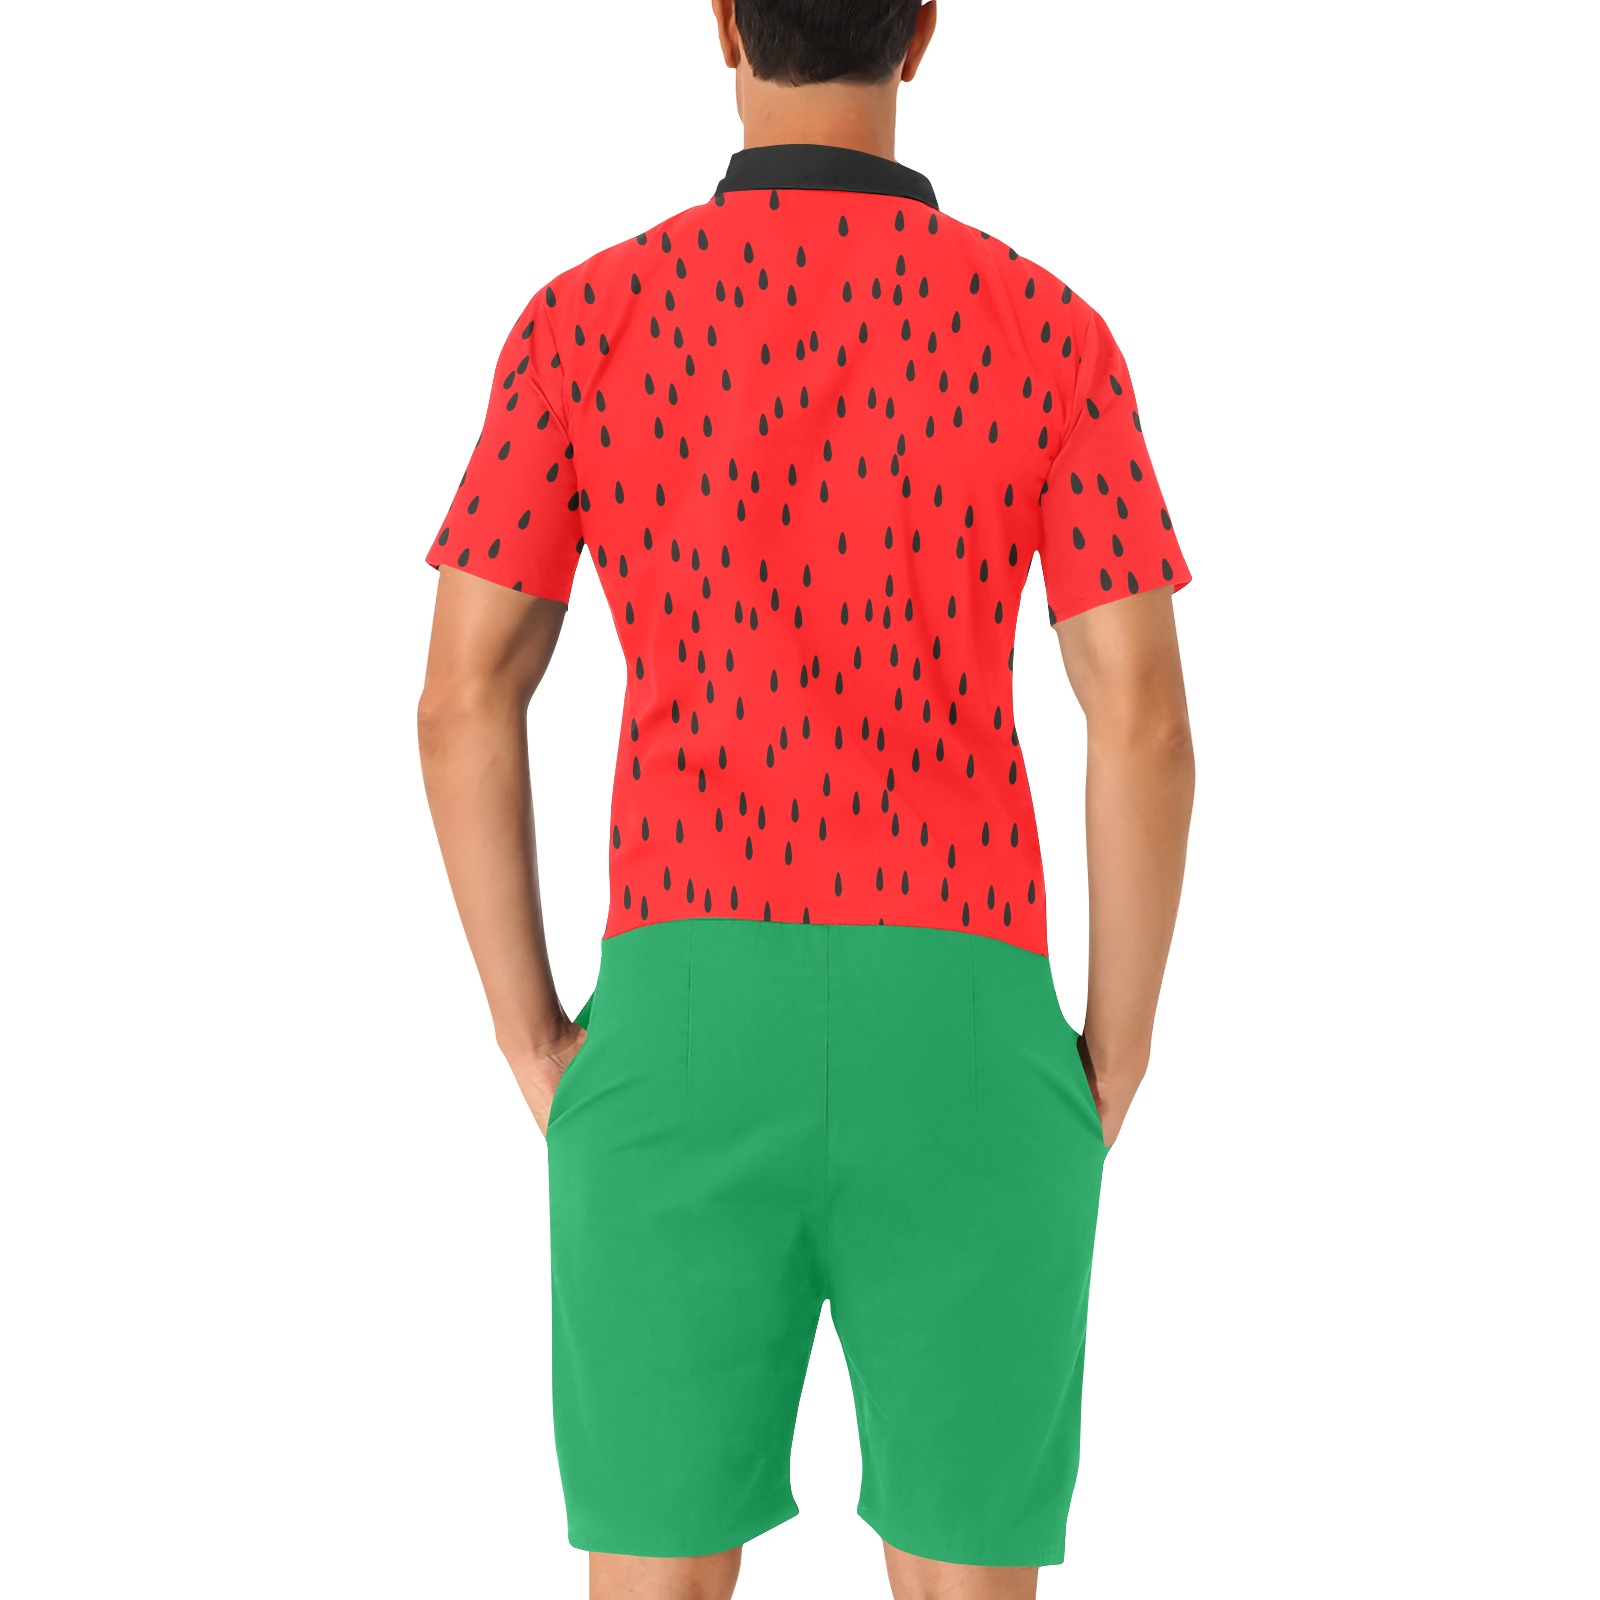 Watermelon Men's Short Sleeve Jumpsuit